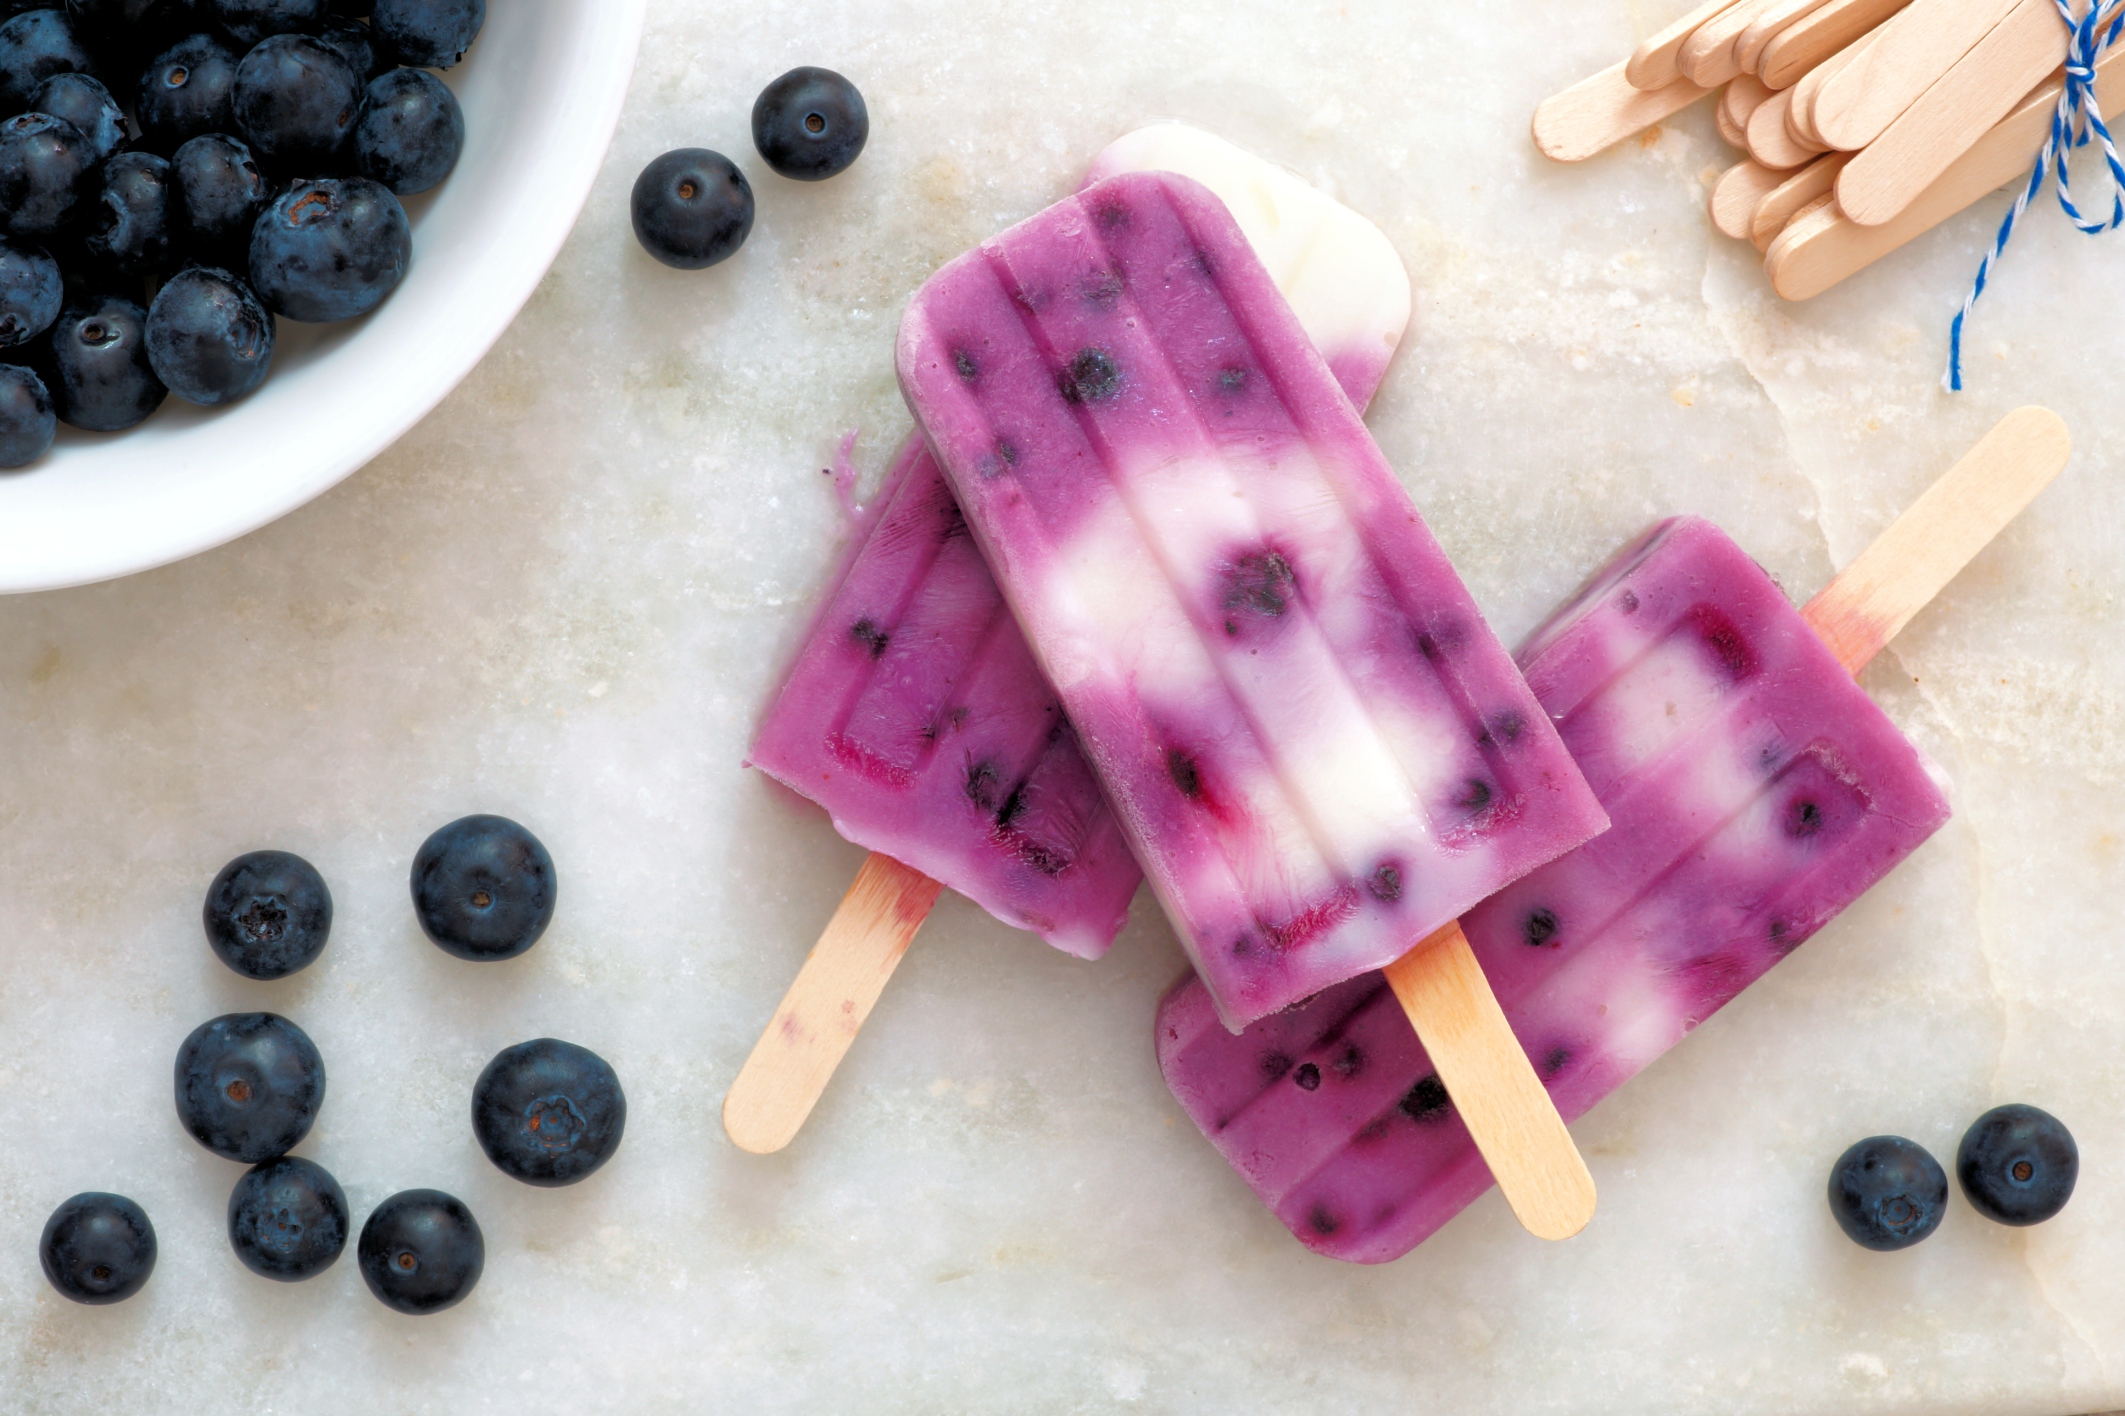 Recipes: Beat the heat with healthy frozen treats